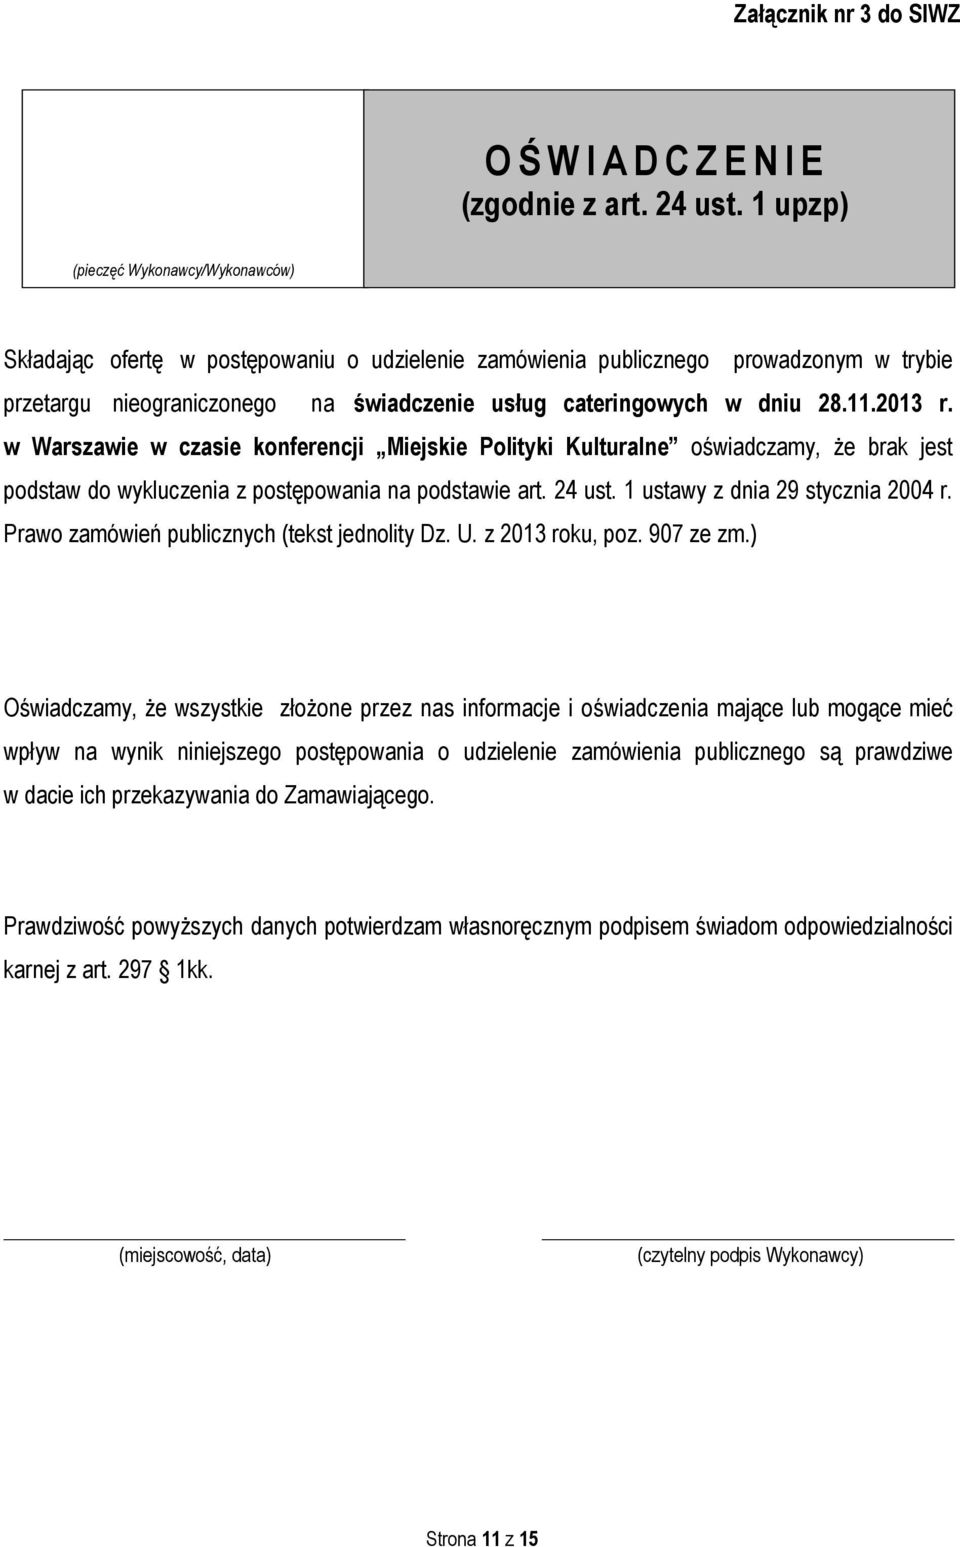 11.2013 r. w Warszawie w czasie konferencji Miejskie Polityki Kulturalne oświadczamy, że brak jest podstaw do wykluczenia z postępowania na podstawie art. 24 ust. 1 ustawy z dnia 29 stycznia 2004 r.